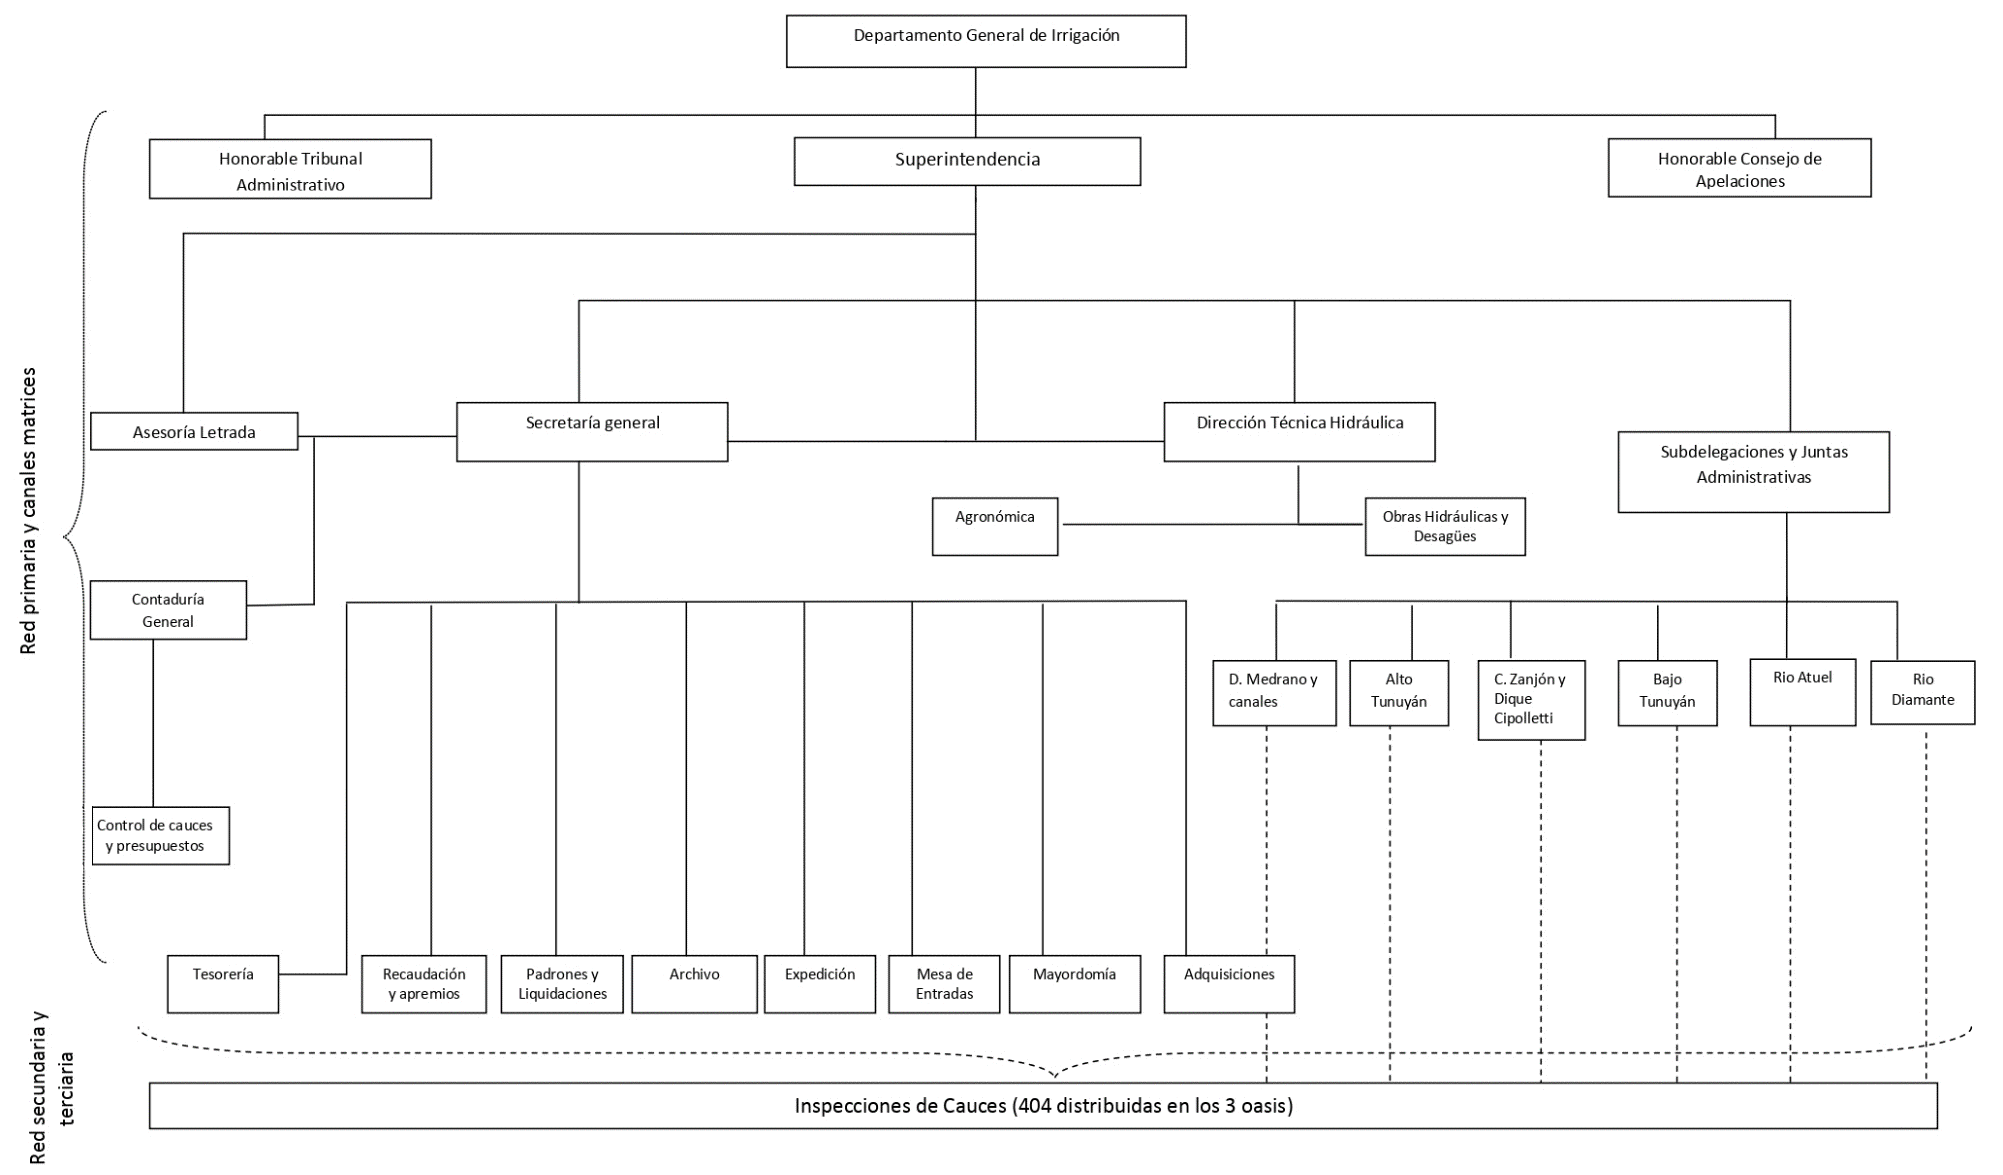 Organización del DGI, 1932-1943 (estimativo)